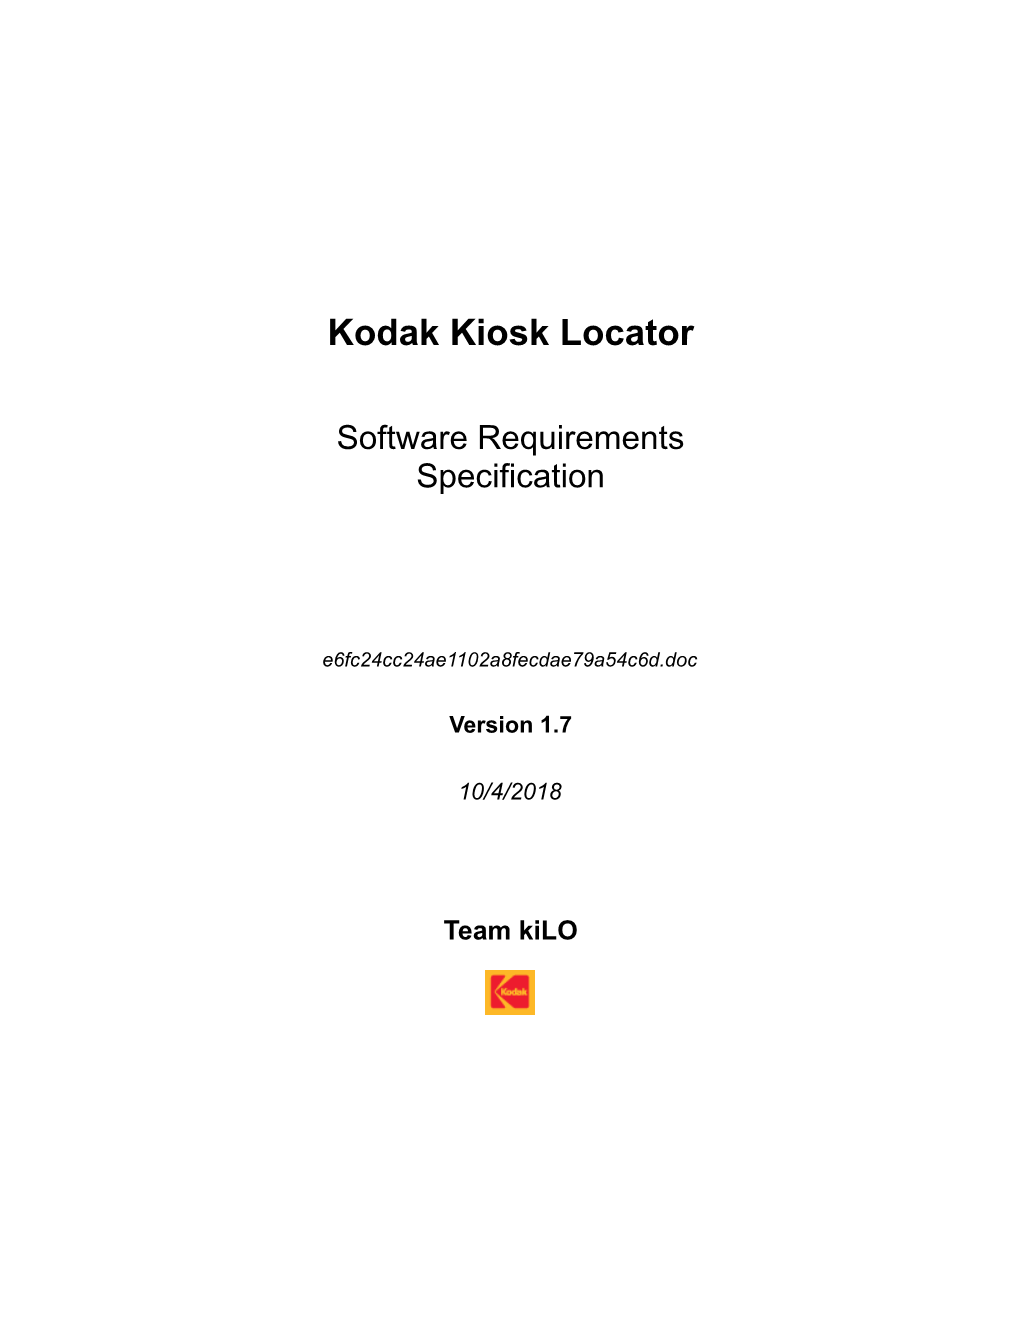 Kodak Kiosk Locator SRS